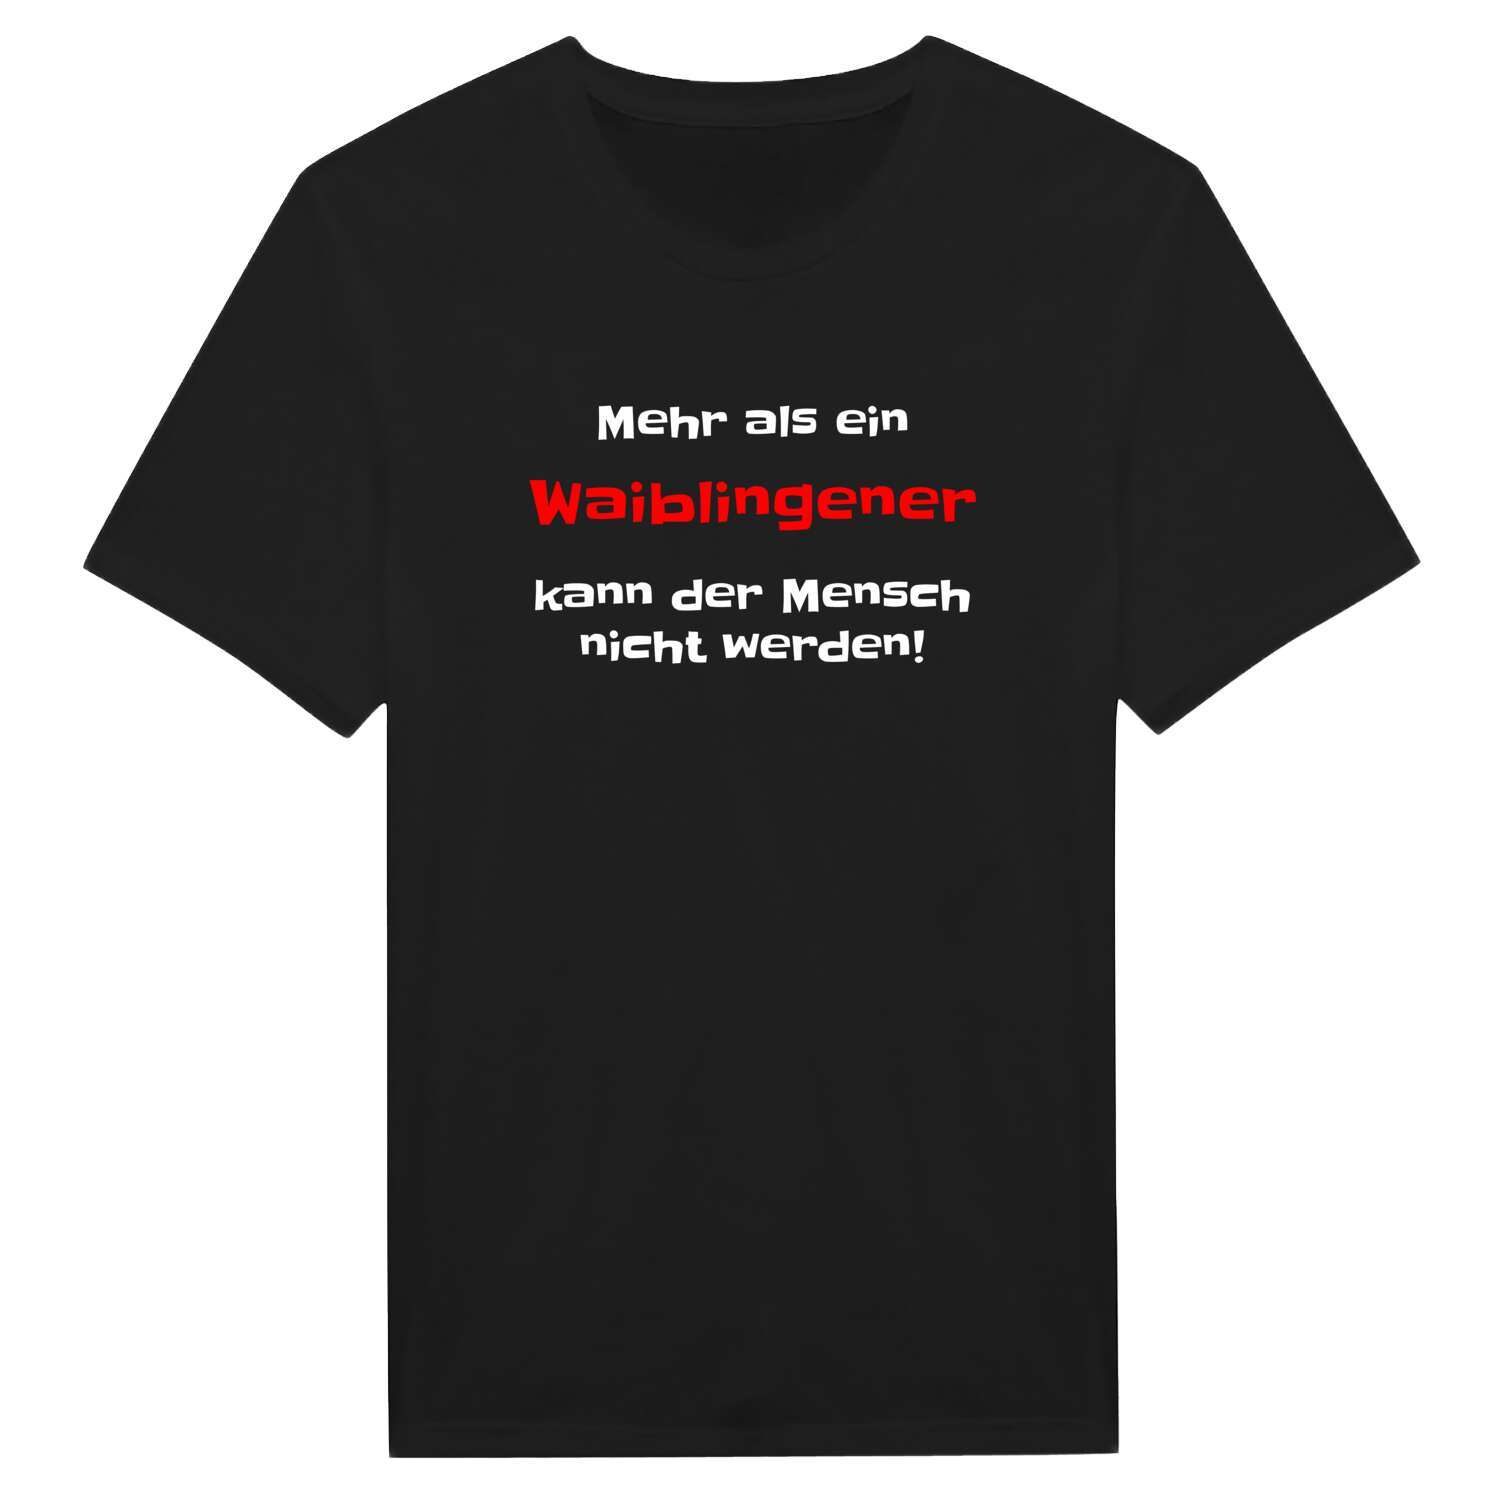 Waiblingen T-Shirt »Mehr als ein«